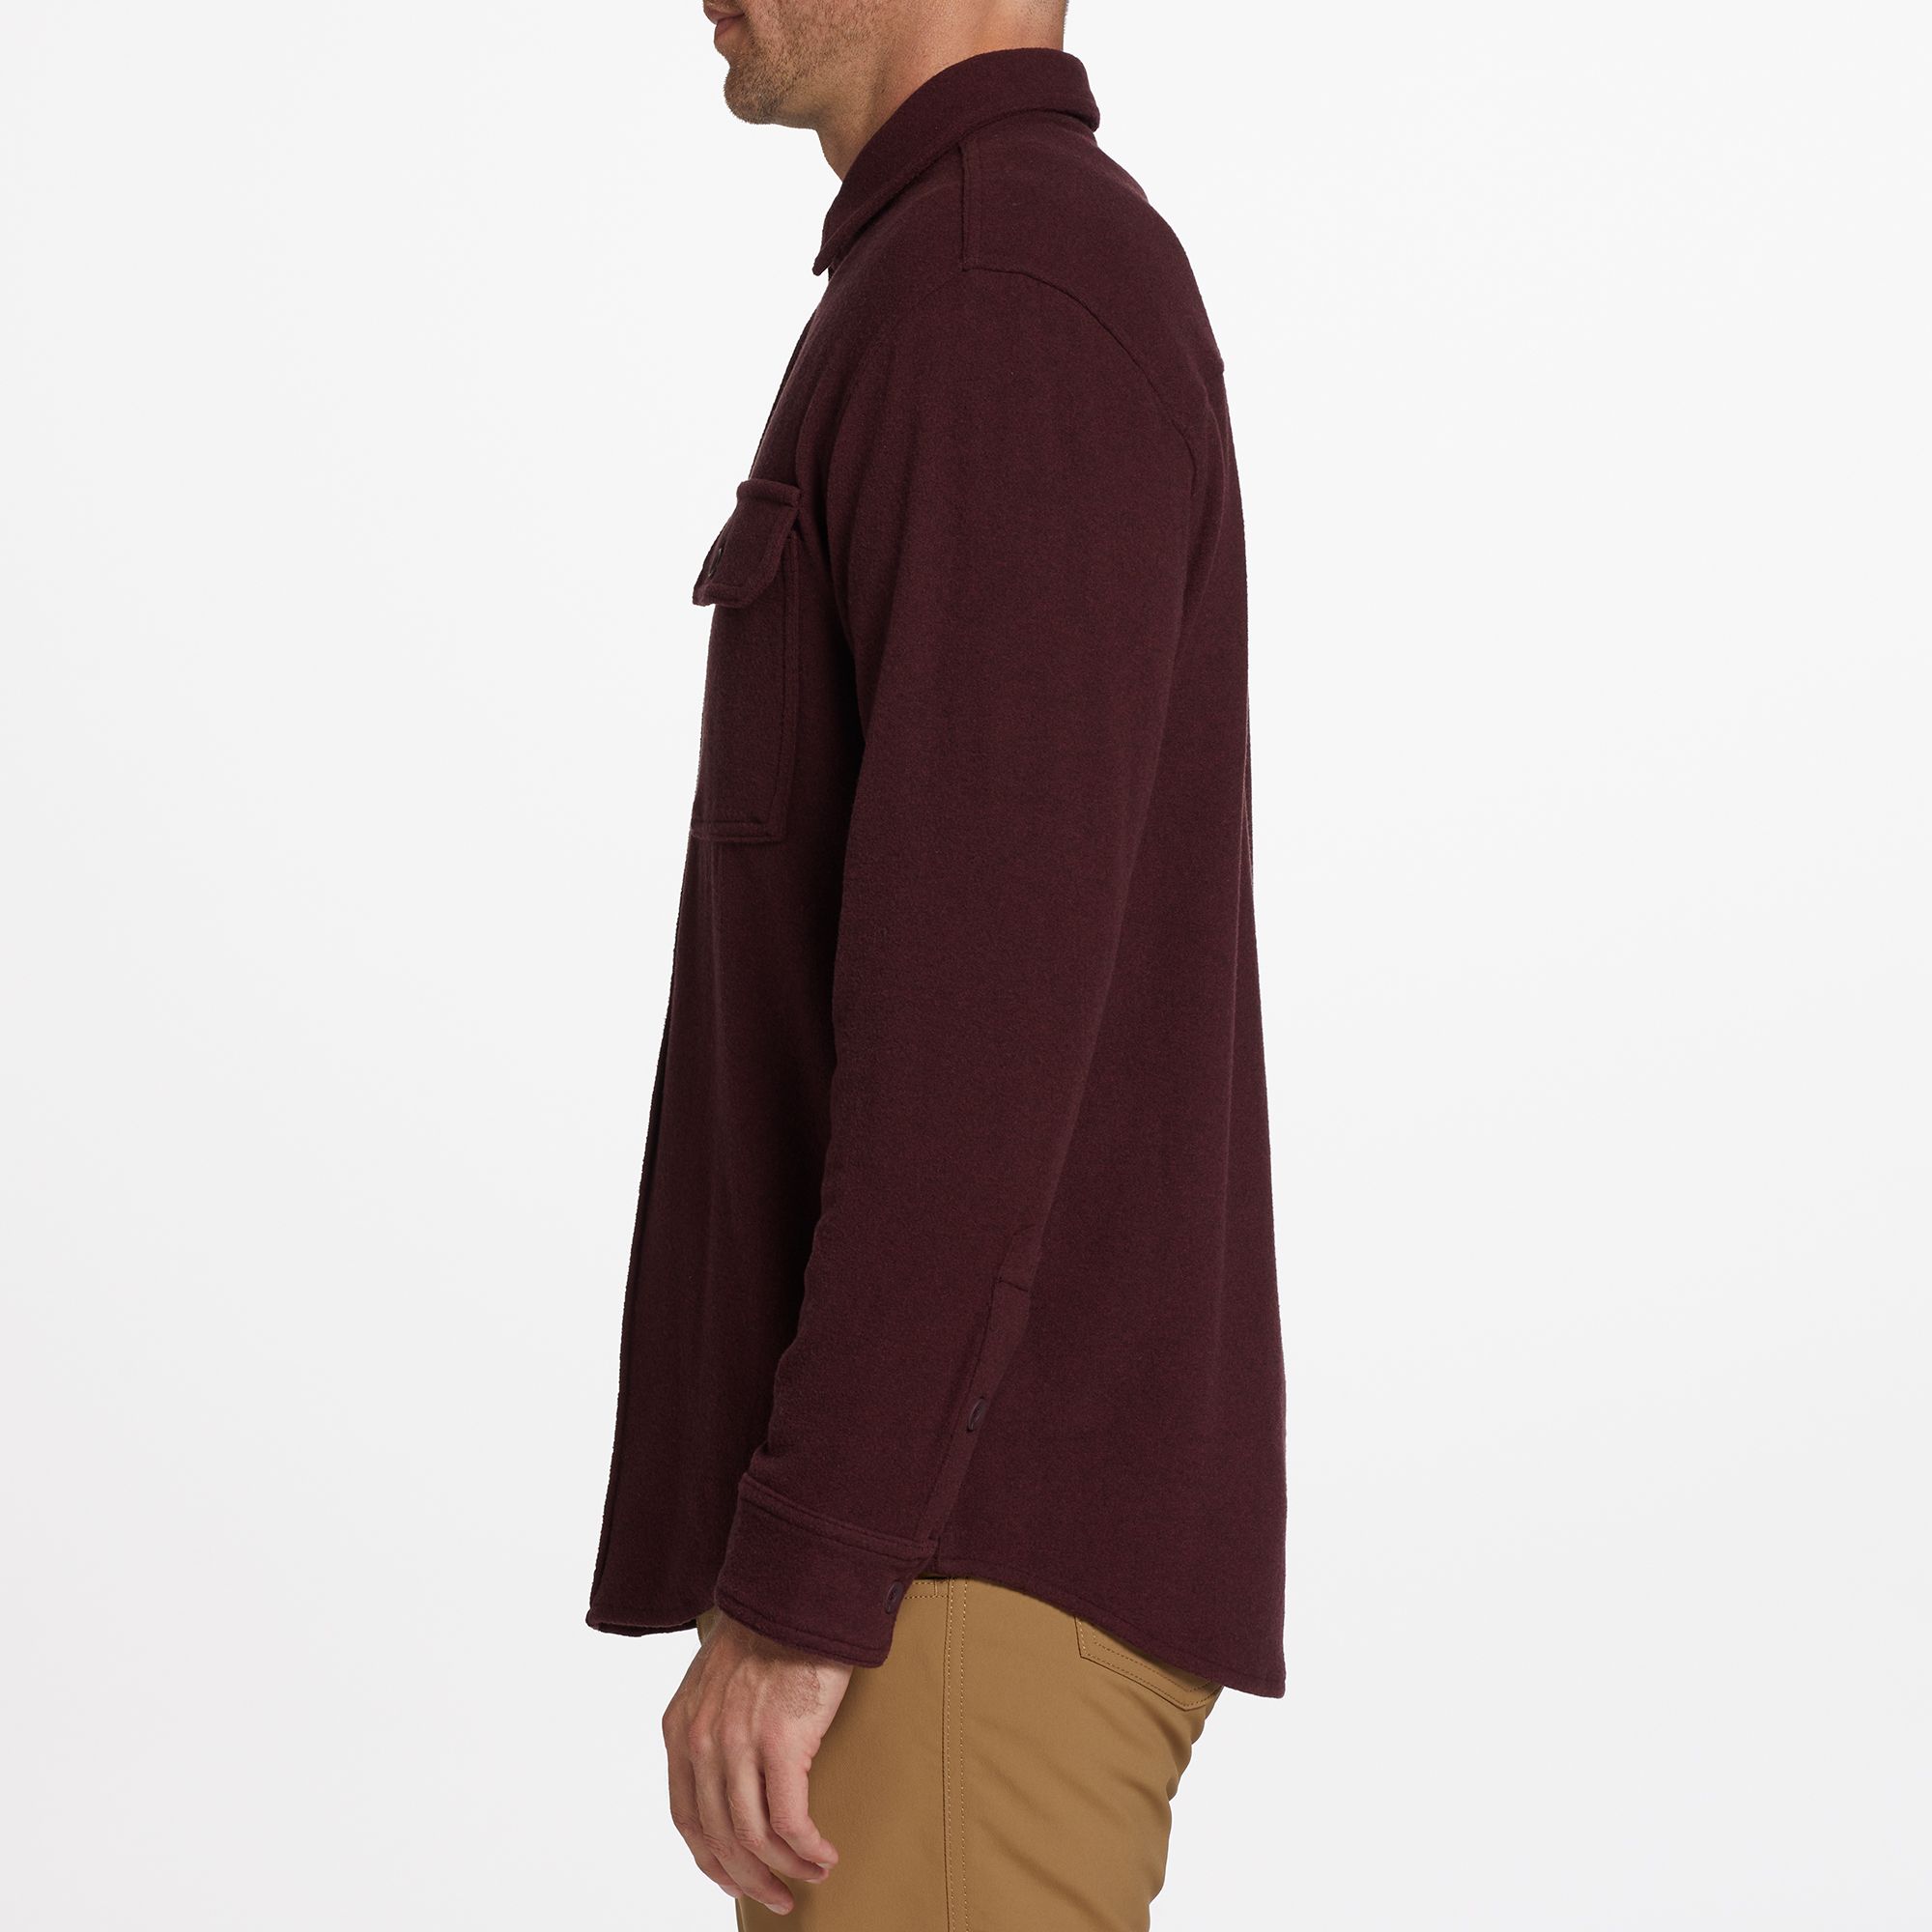 Alpine Design Men's Wanderful Long Sleeve Button-Up Shirt